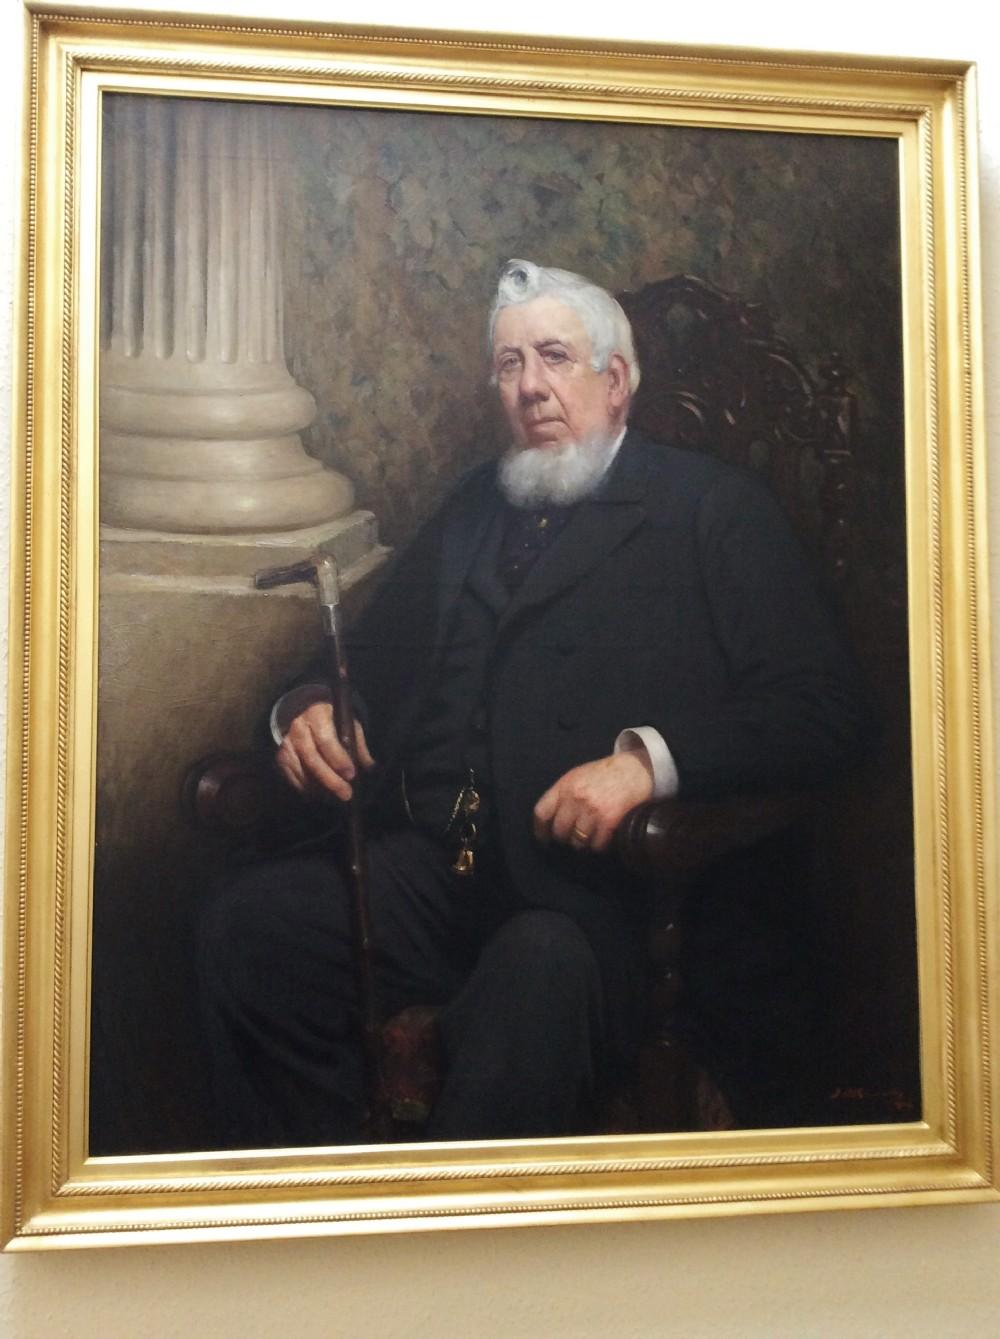 John Dalziel Kenworthy Porträt eines Gentleman . Schönes, großes und imposantes Öl auf Leinwand in einem vergoldeten Rahmen.
Der Dargestellte ist nicht identifizierbar, er hat ein aristokratisches und charaktervolles Aussehen. Sitzend, den Stock in